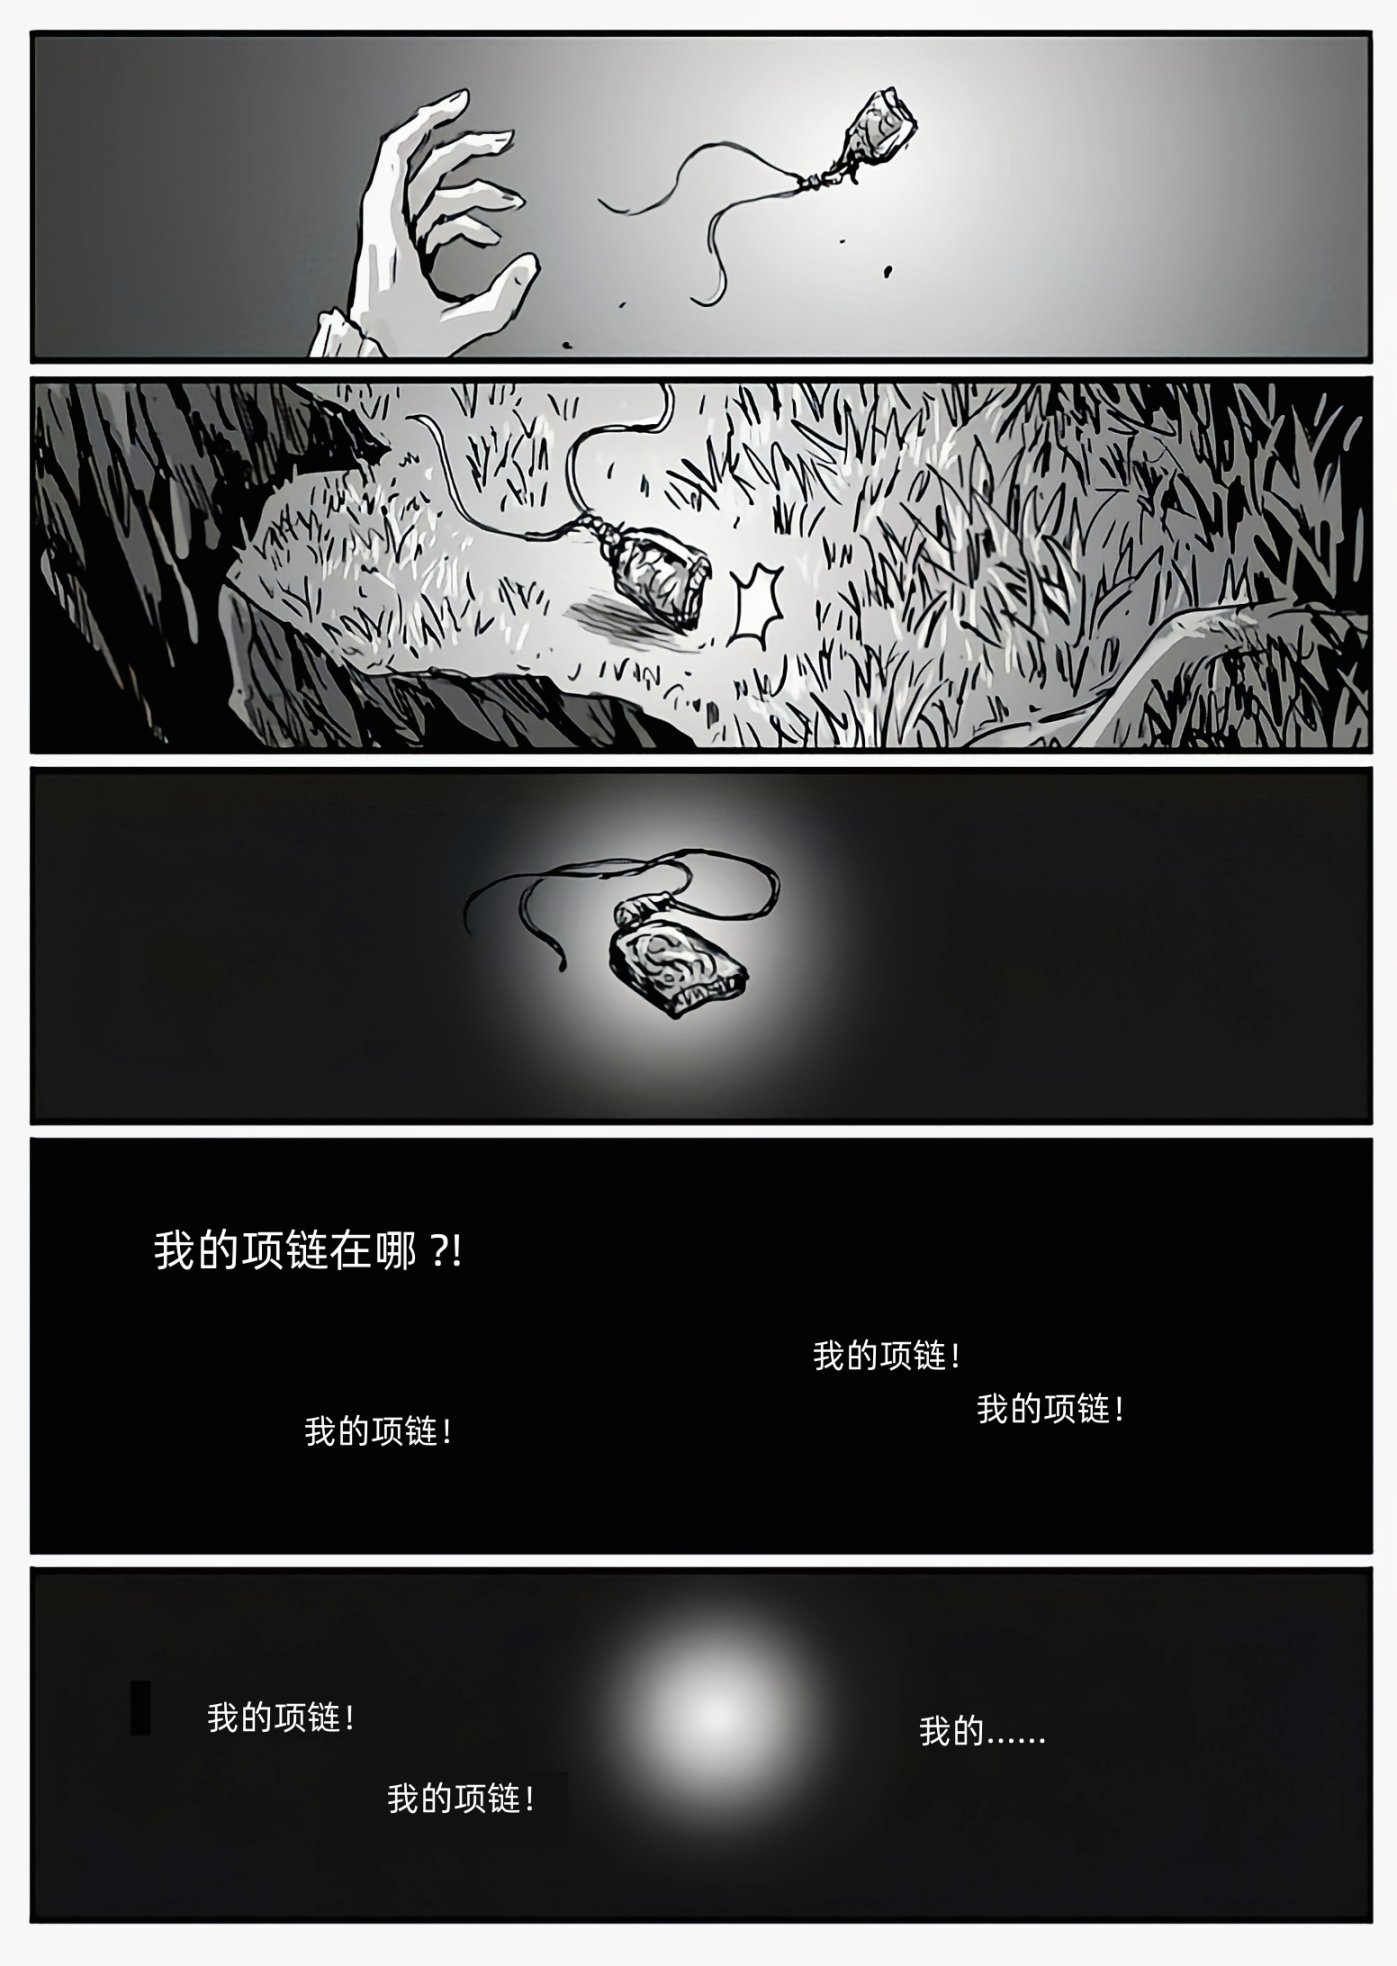 【漫畫】深淵漫步者（chap5烏拉席露覆滅）-第10張